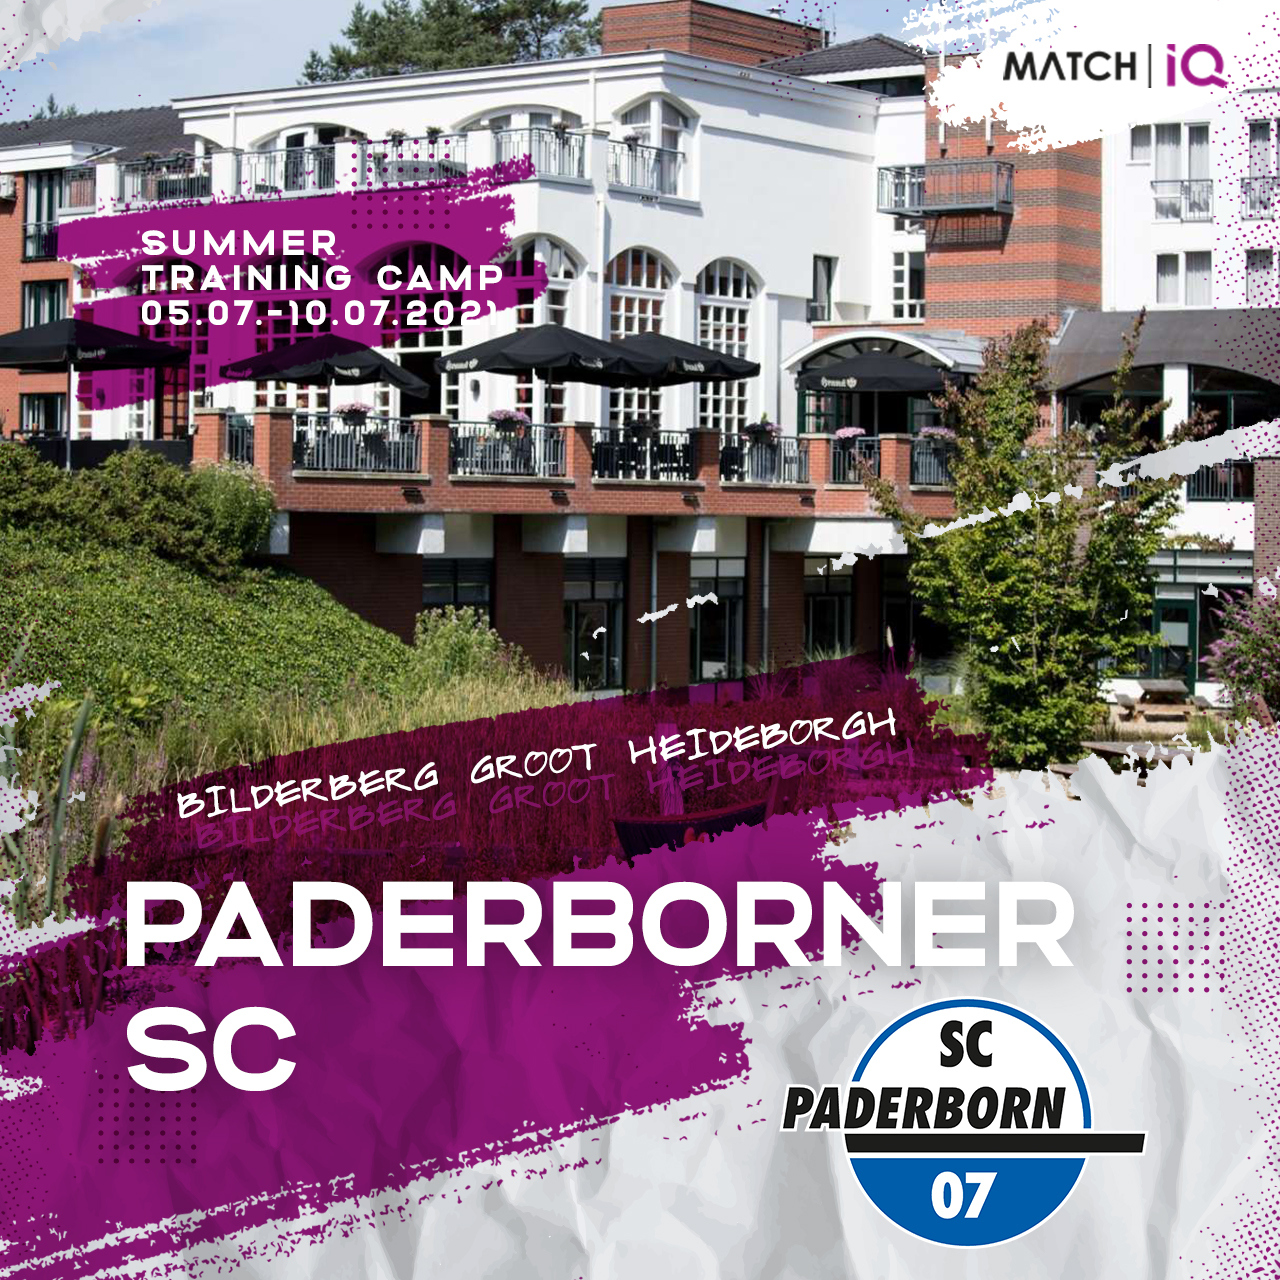 SC Paderborn gemeinsam mit Match IQ in die Niederlanden